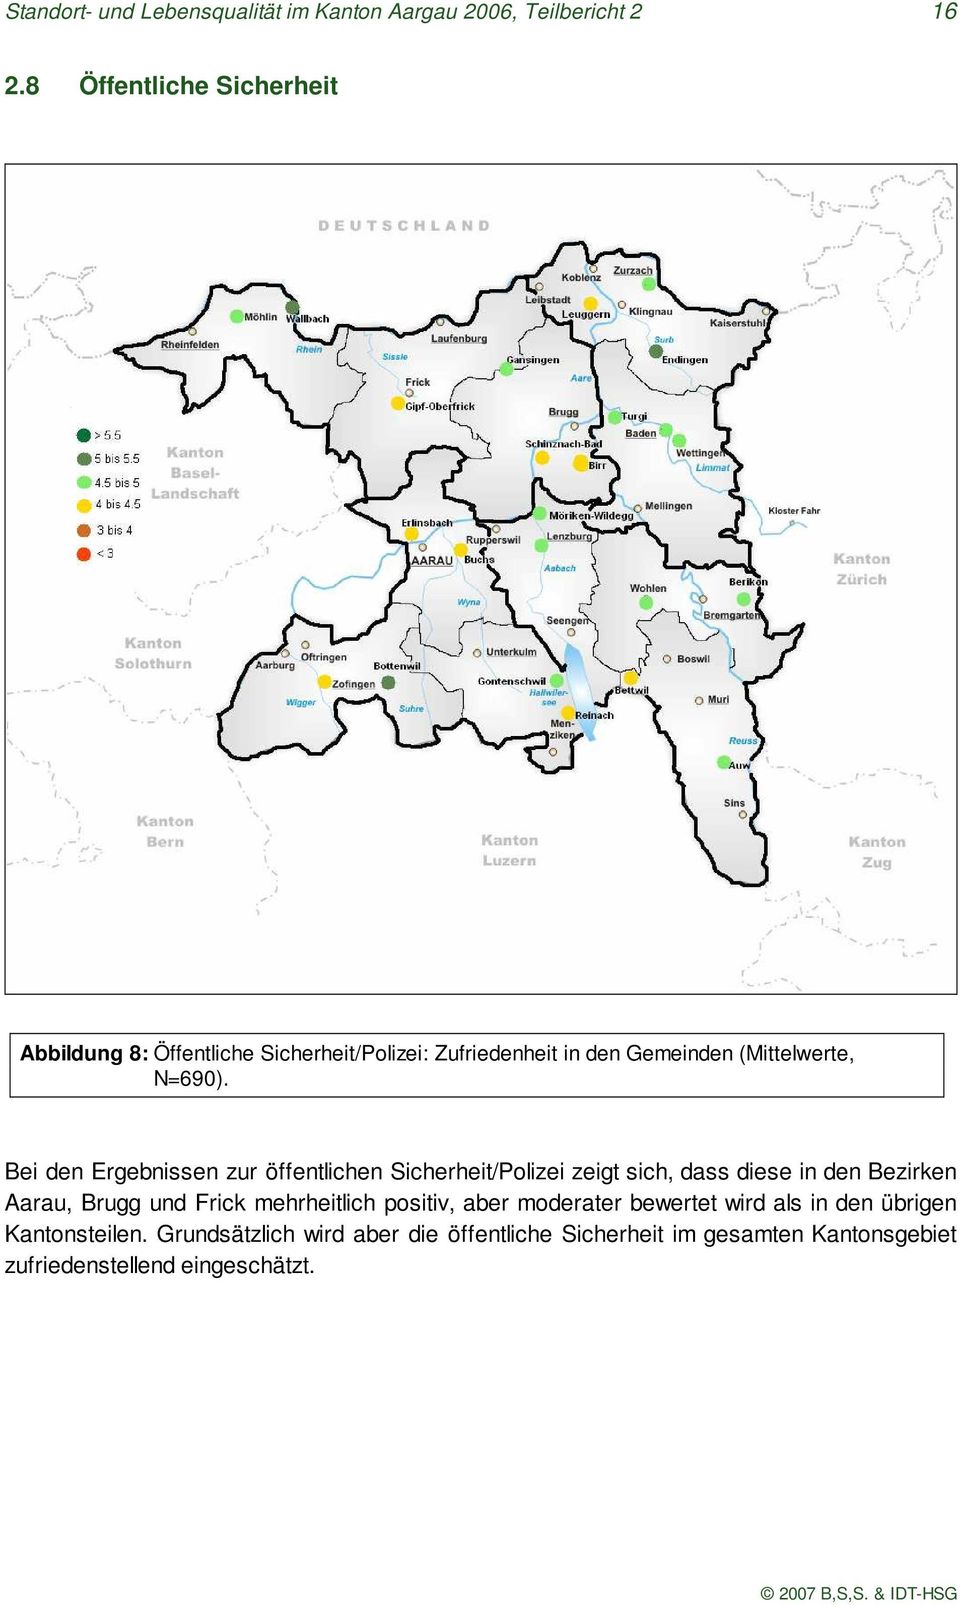 Bei den Ergebnissen zur öffentlichen Sicherheit/Polizei zeigt sich, dass diese in den Bezirken Aarau, Brugg und Frick